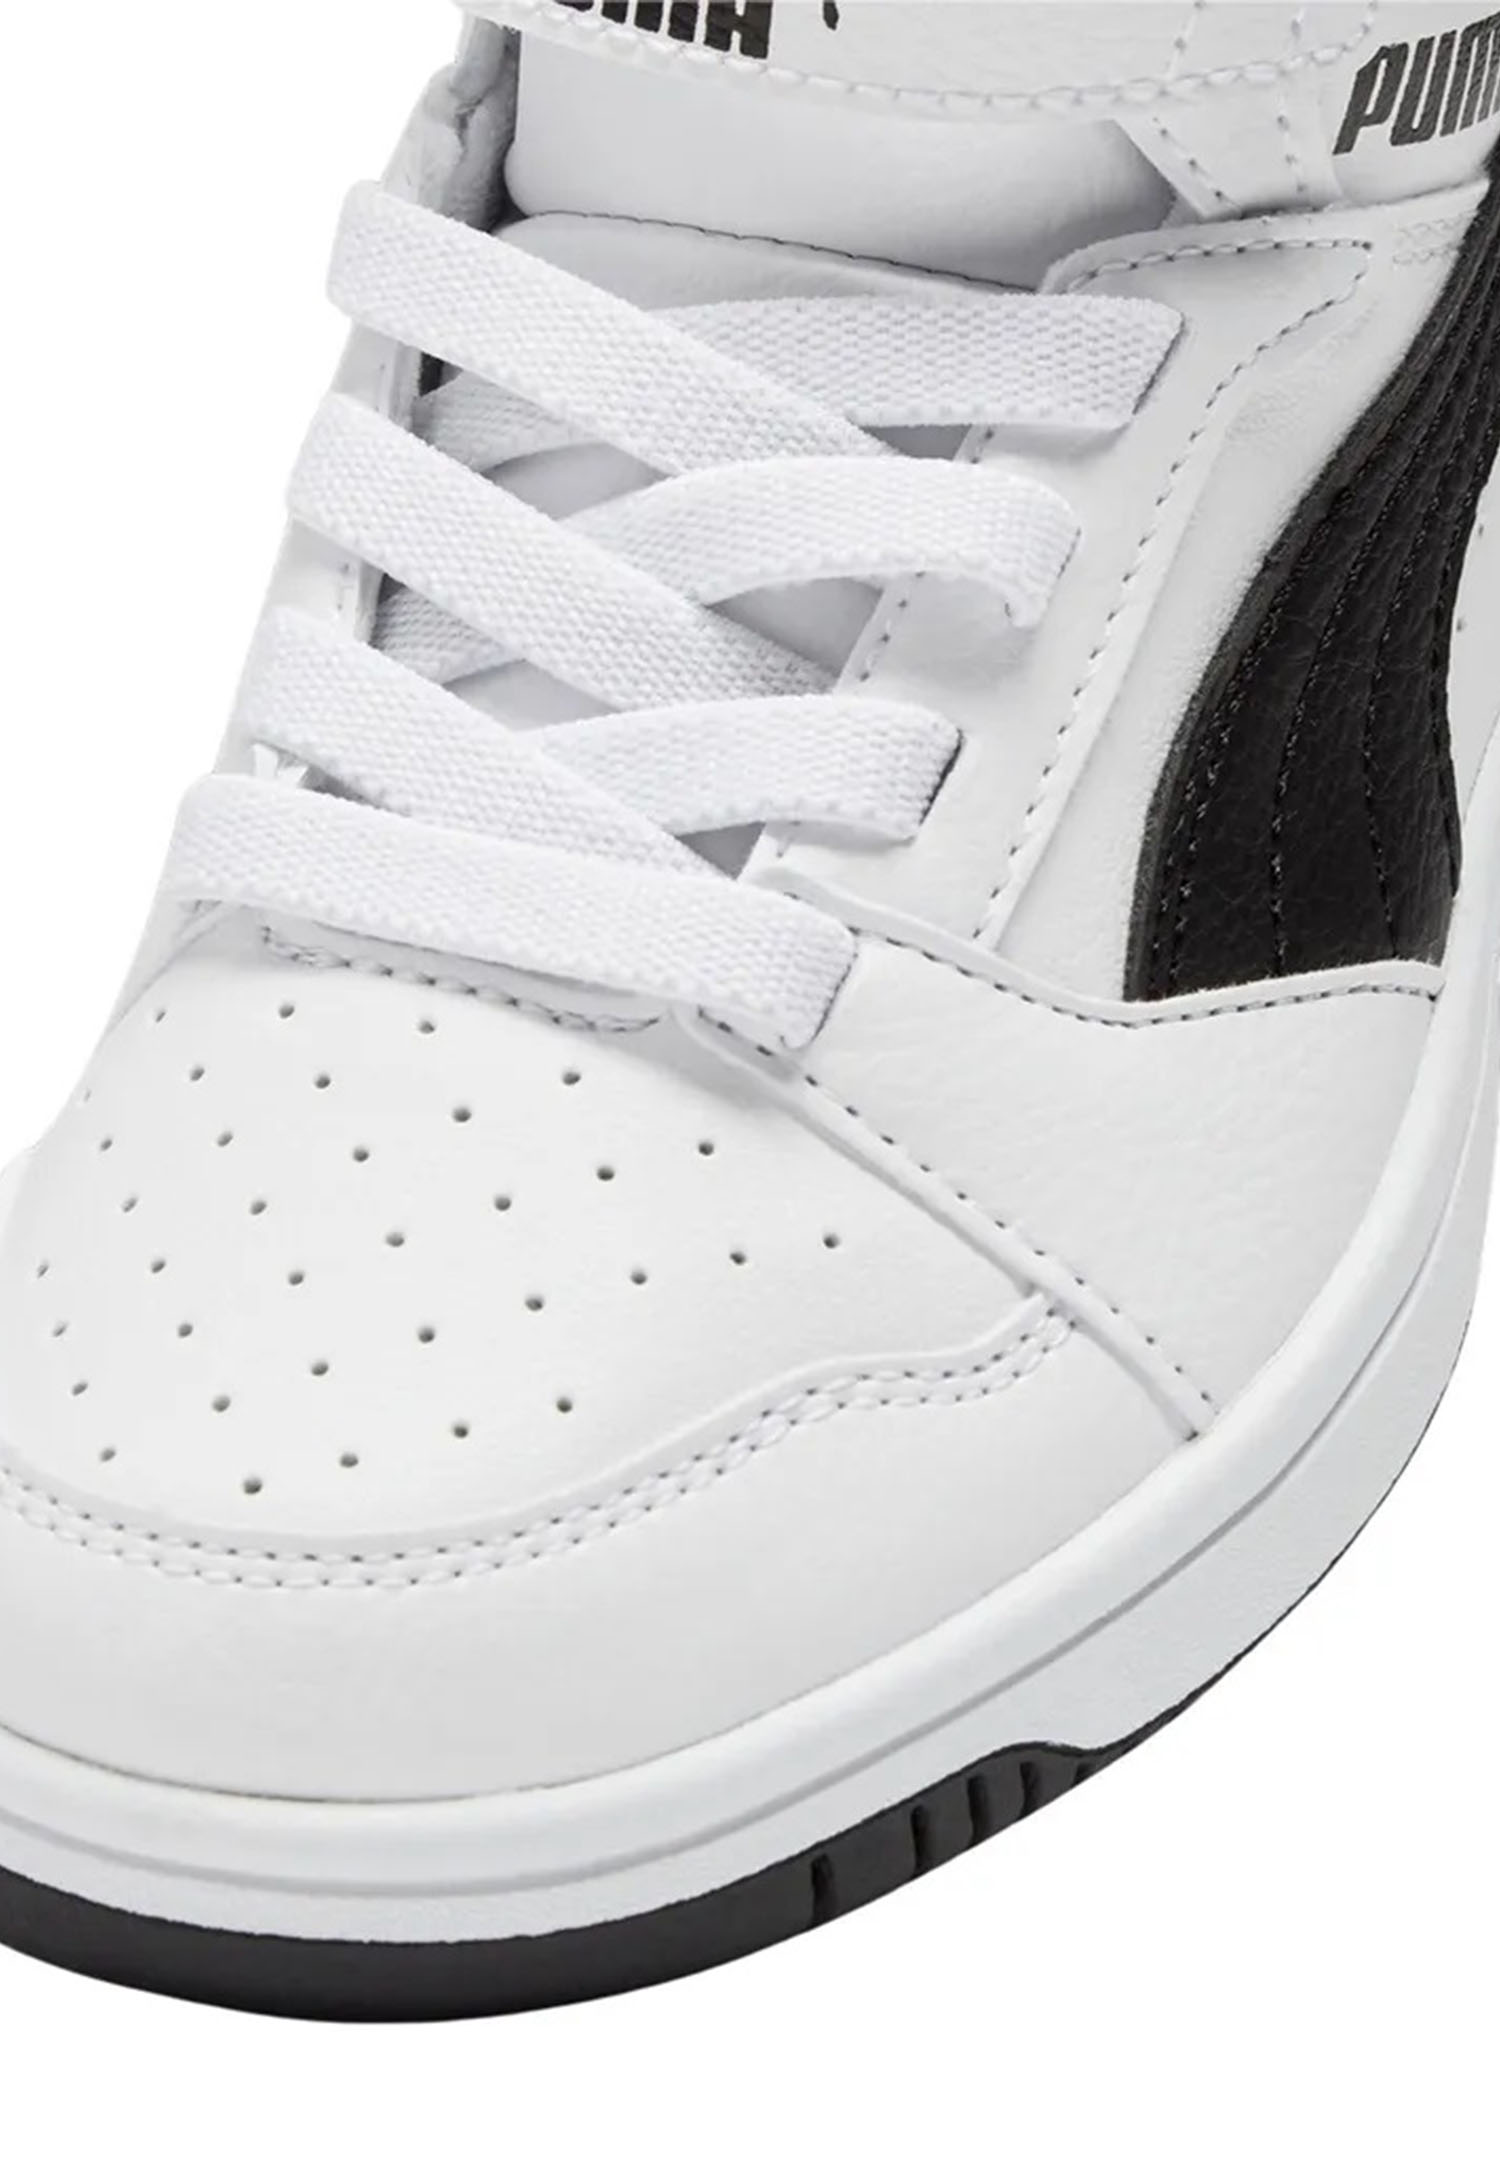 Puma Rebound V6 Mid AC+ PS Unisex Kinder Sneaker 393832 02 weiß/schwarz 